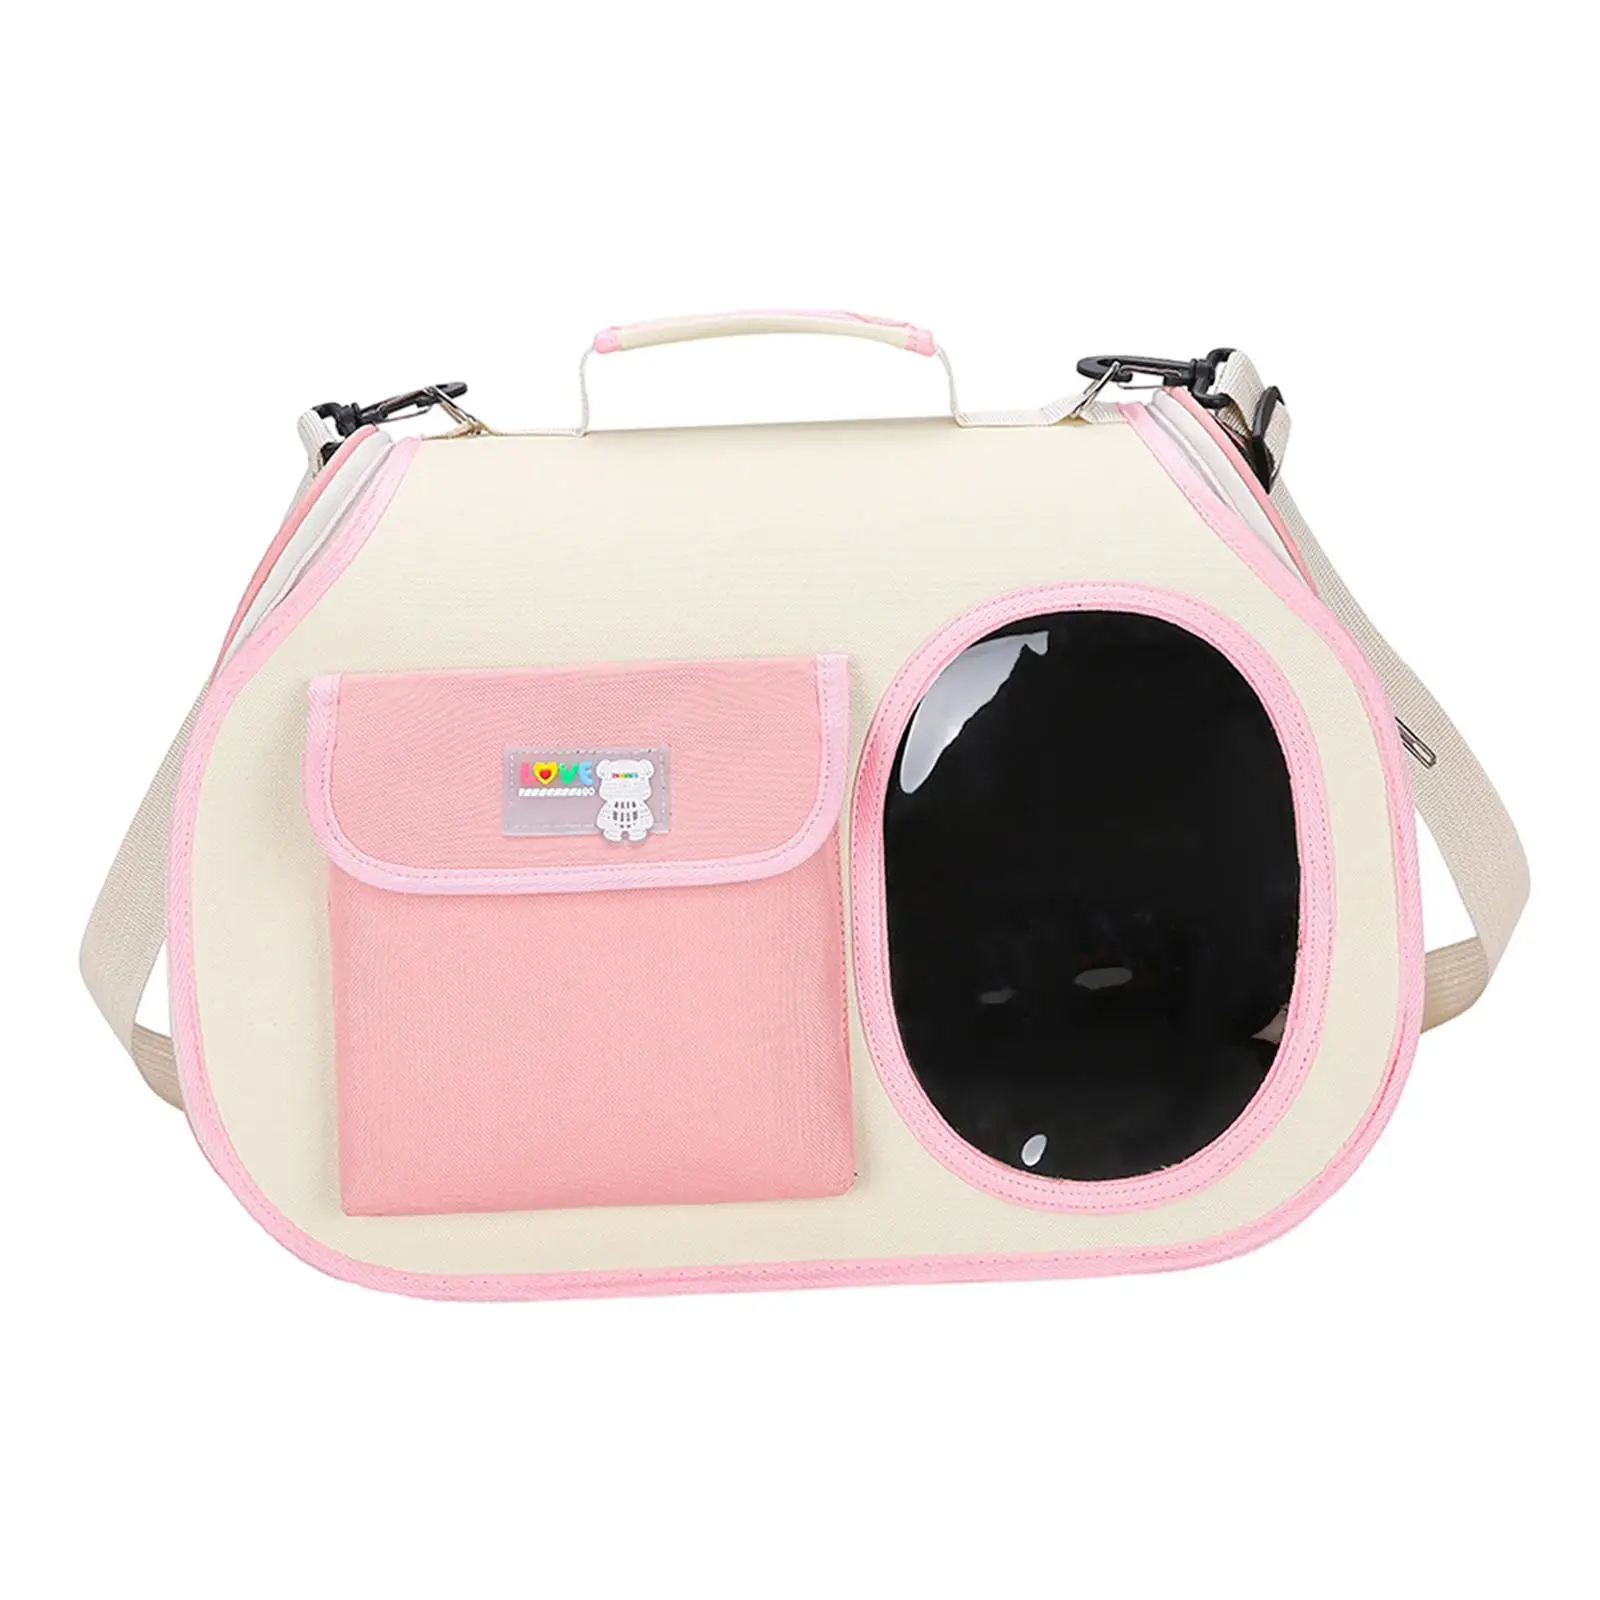 Shoulder Travel Bag Carrying Handbag Carrying Handle Dog Cat Pets Carrier